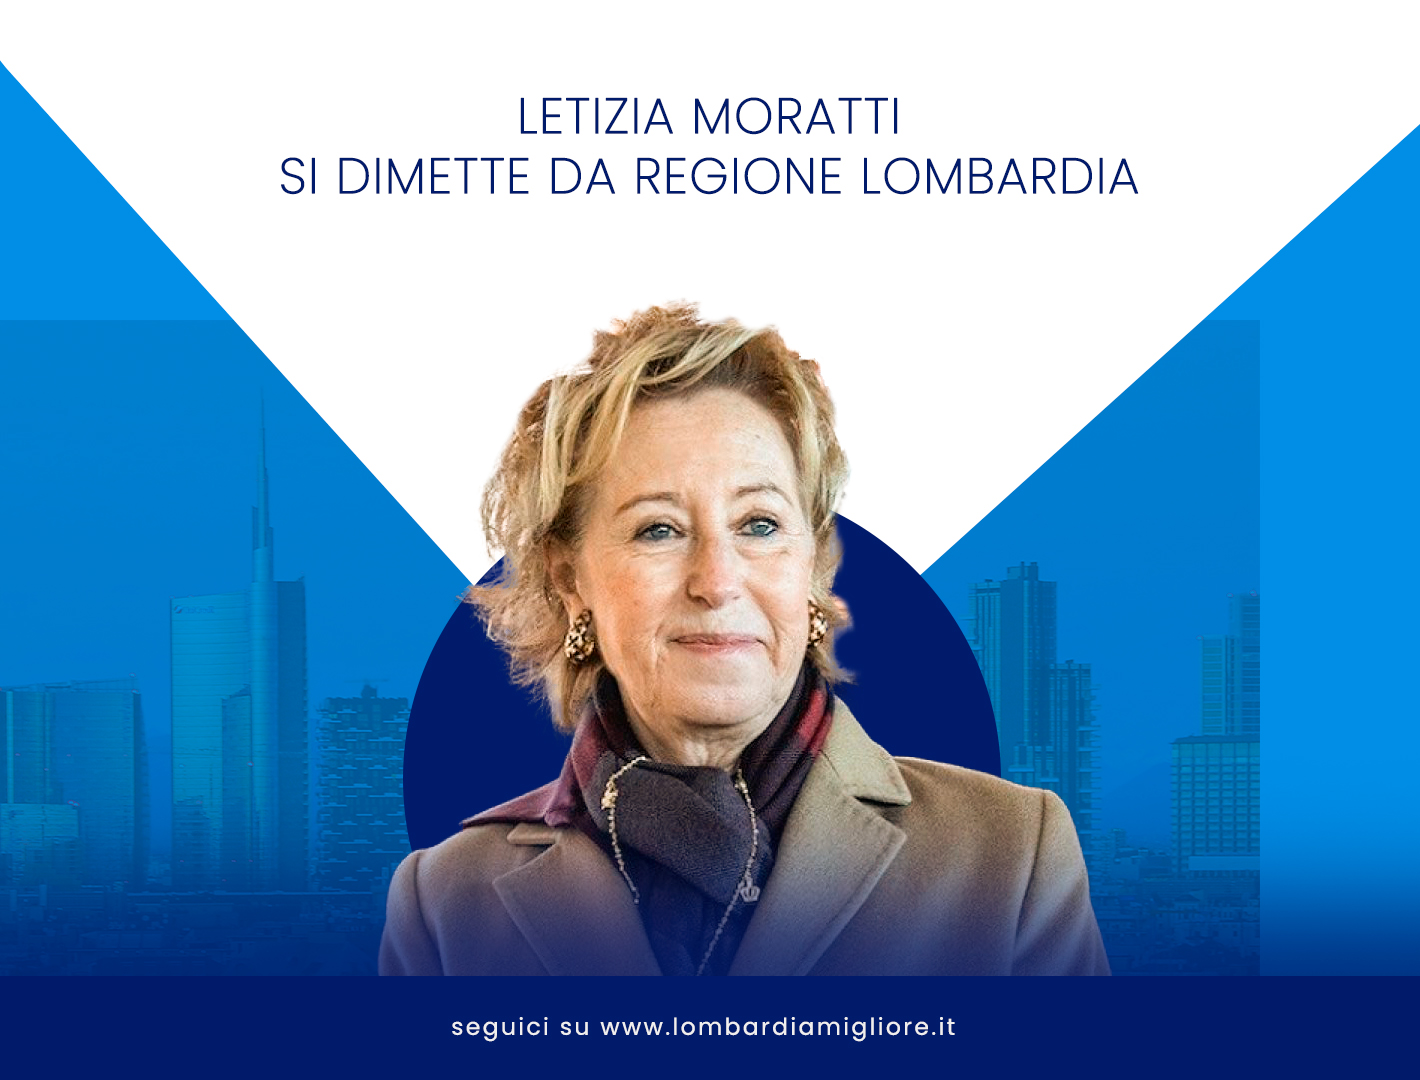 Letizia-Moratti-di-dimette-da-Regione-Lombardia